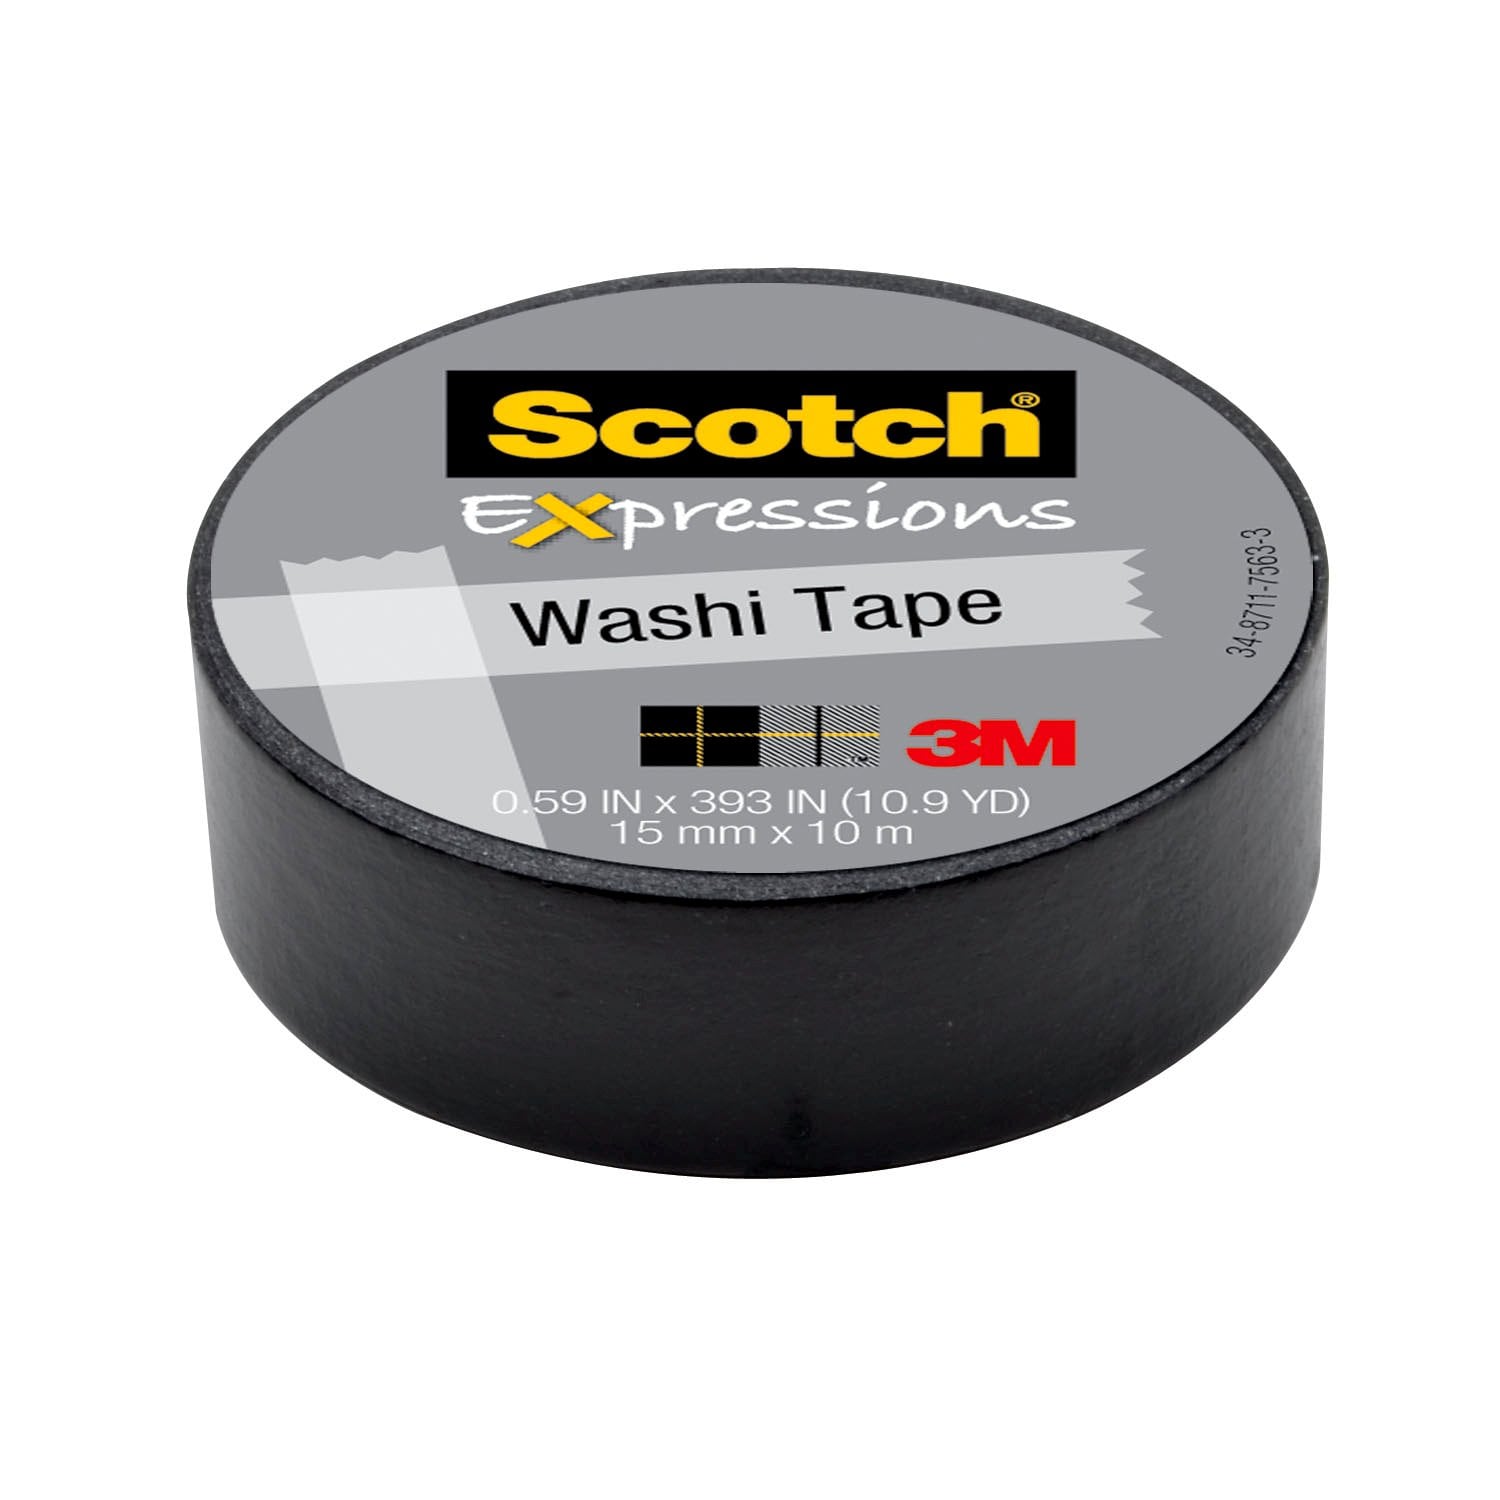 7100019585 - Scotch Expressions Washi Tape C314-BLK, .59 in x 393 in (15 mm x 10 m)
Black